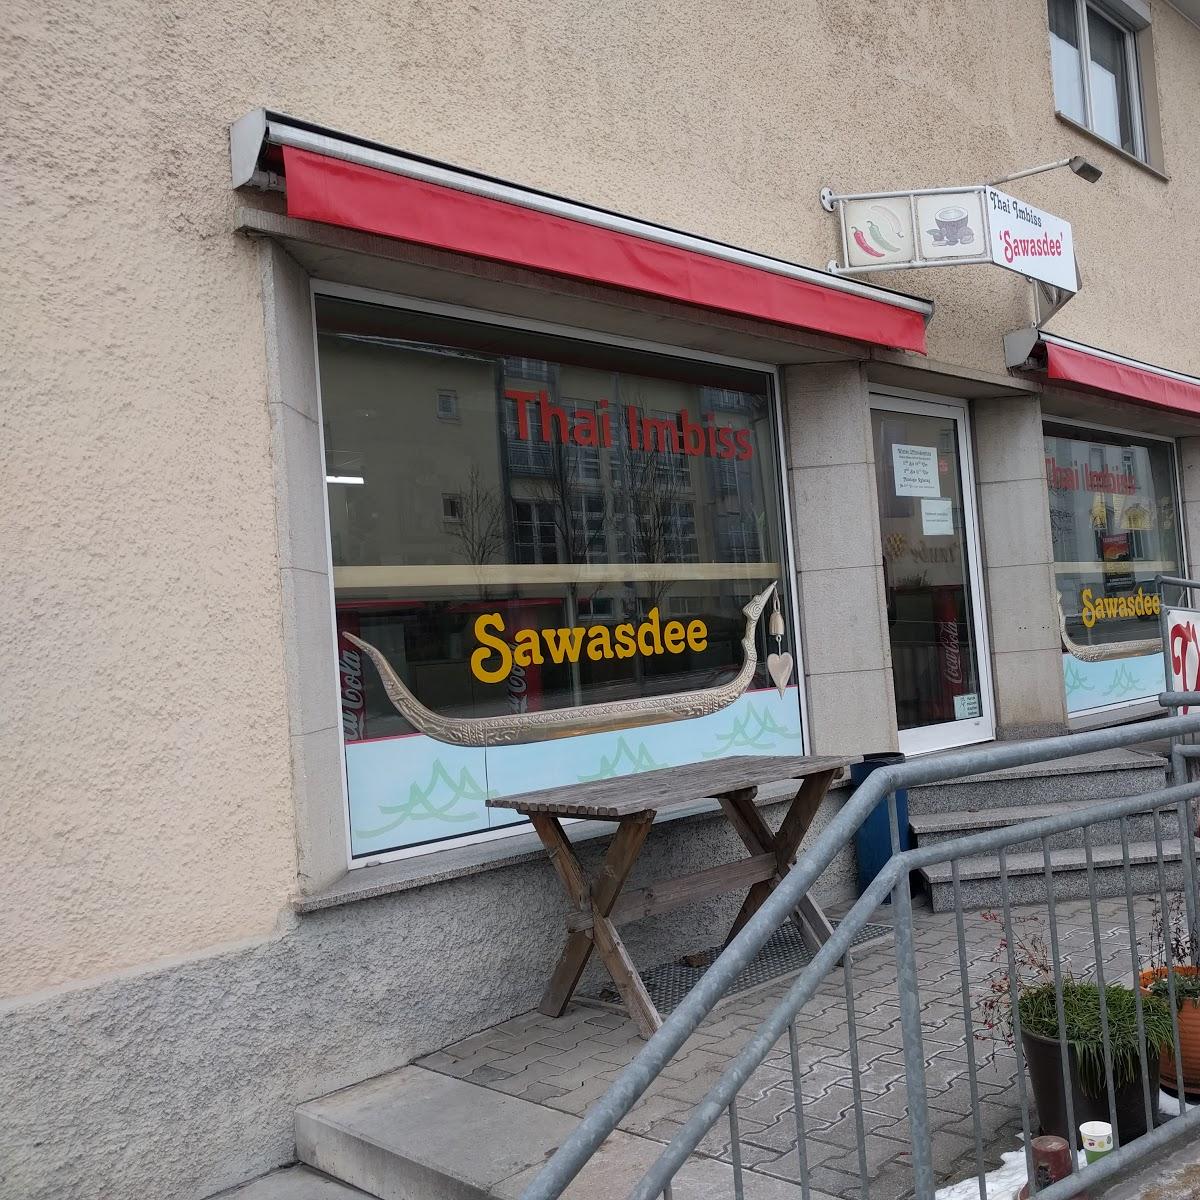 Restaurant "Thai-Imbiss Sawasdee" in Friedrichshafen